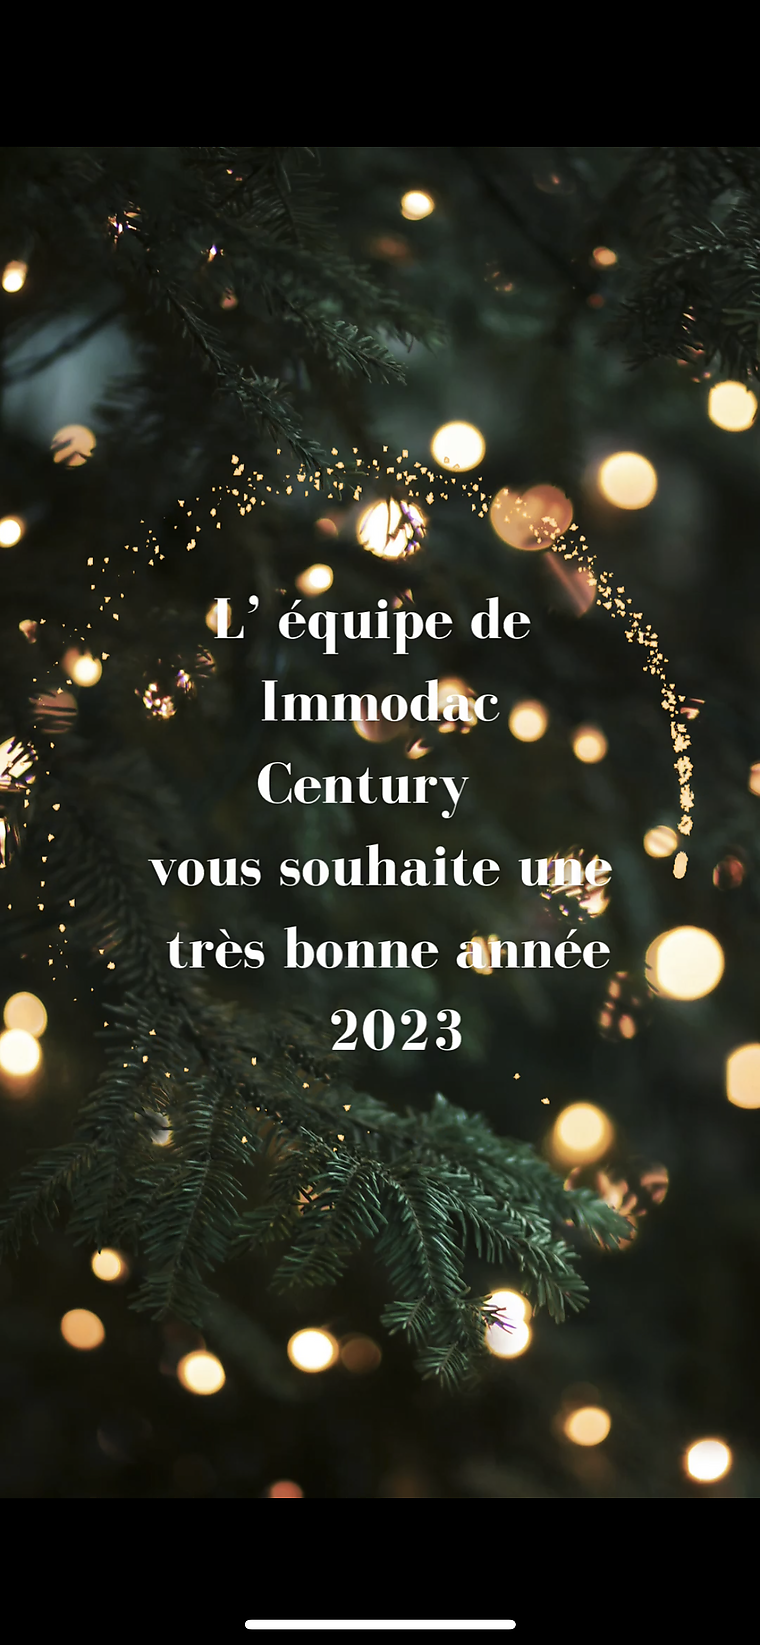 El equipo de Immodac Century Construcción y reformas os desea un muy feliz año nuevo y un próspero año 2023.